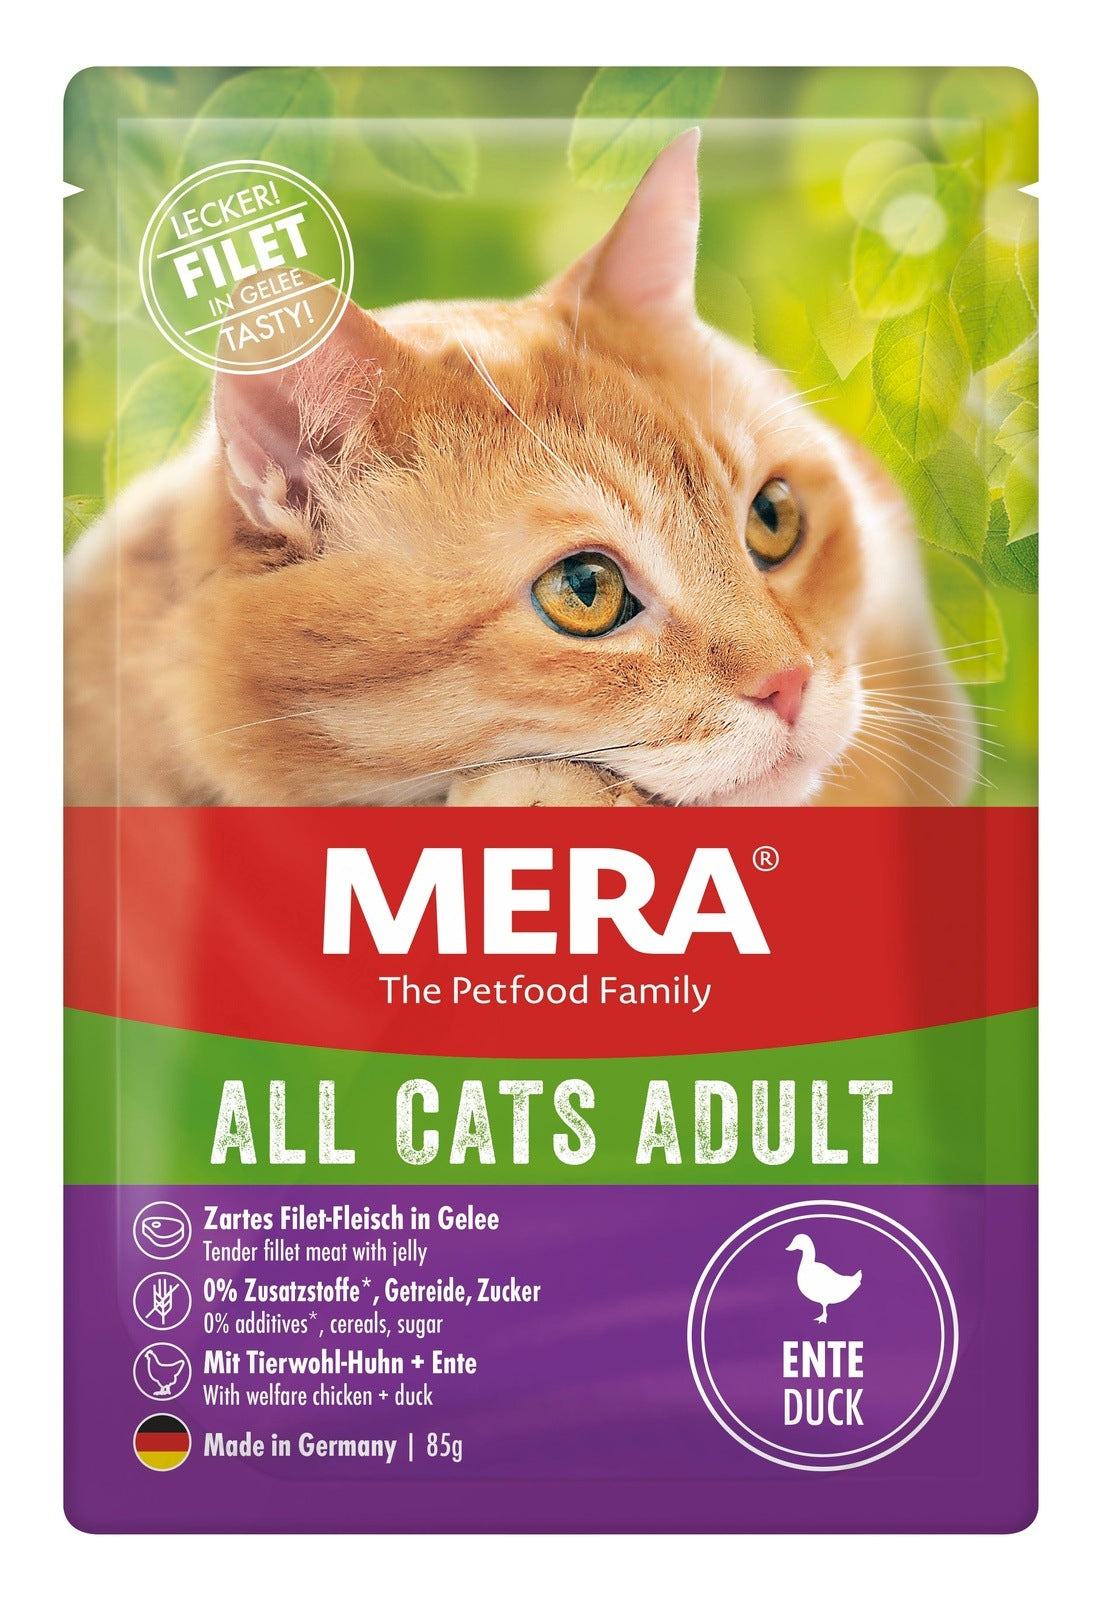 Artikel mit dem Namen MERA Cats Adult Ente im Shop von zoo.de , dem Onlineshop für nachhaltiges Hundefutter und Katzenfutter.